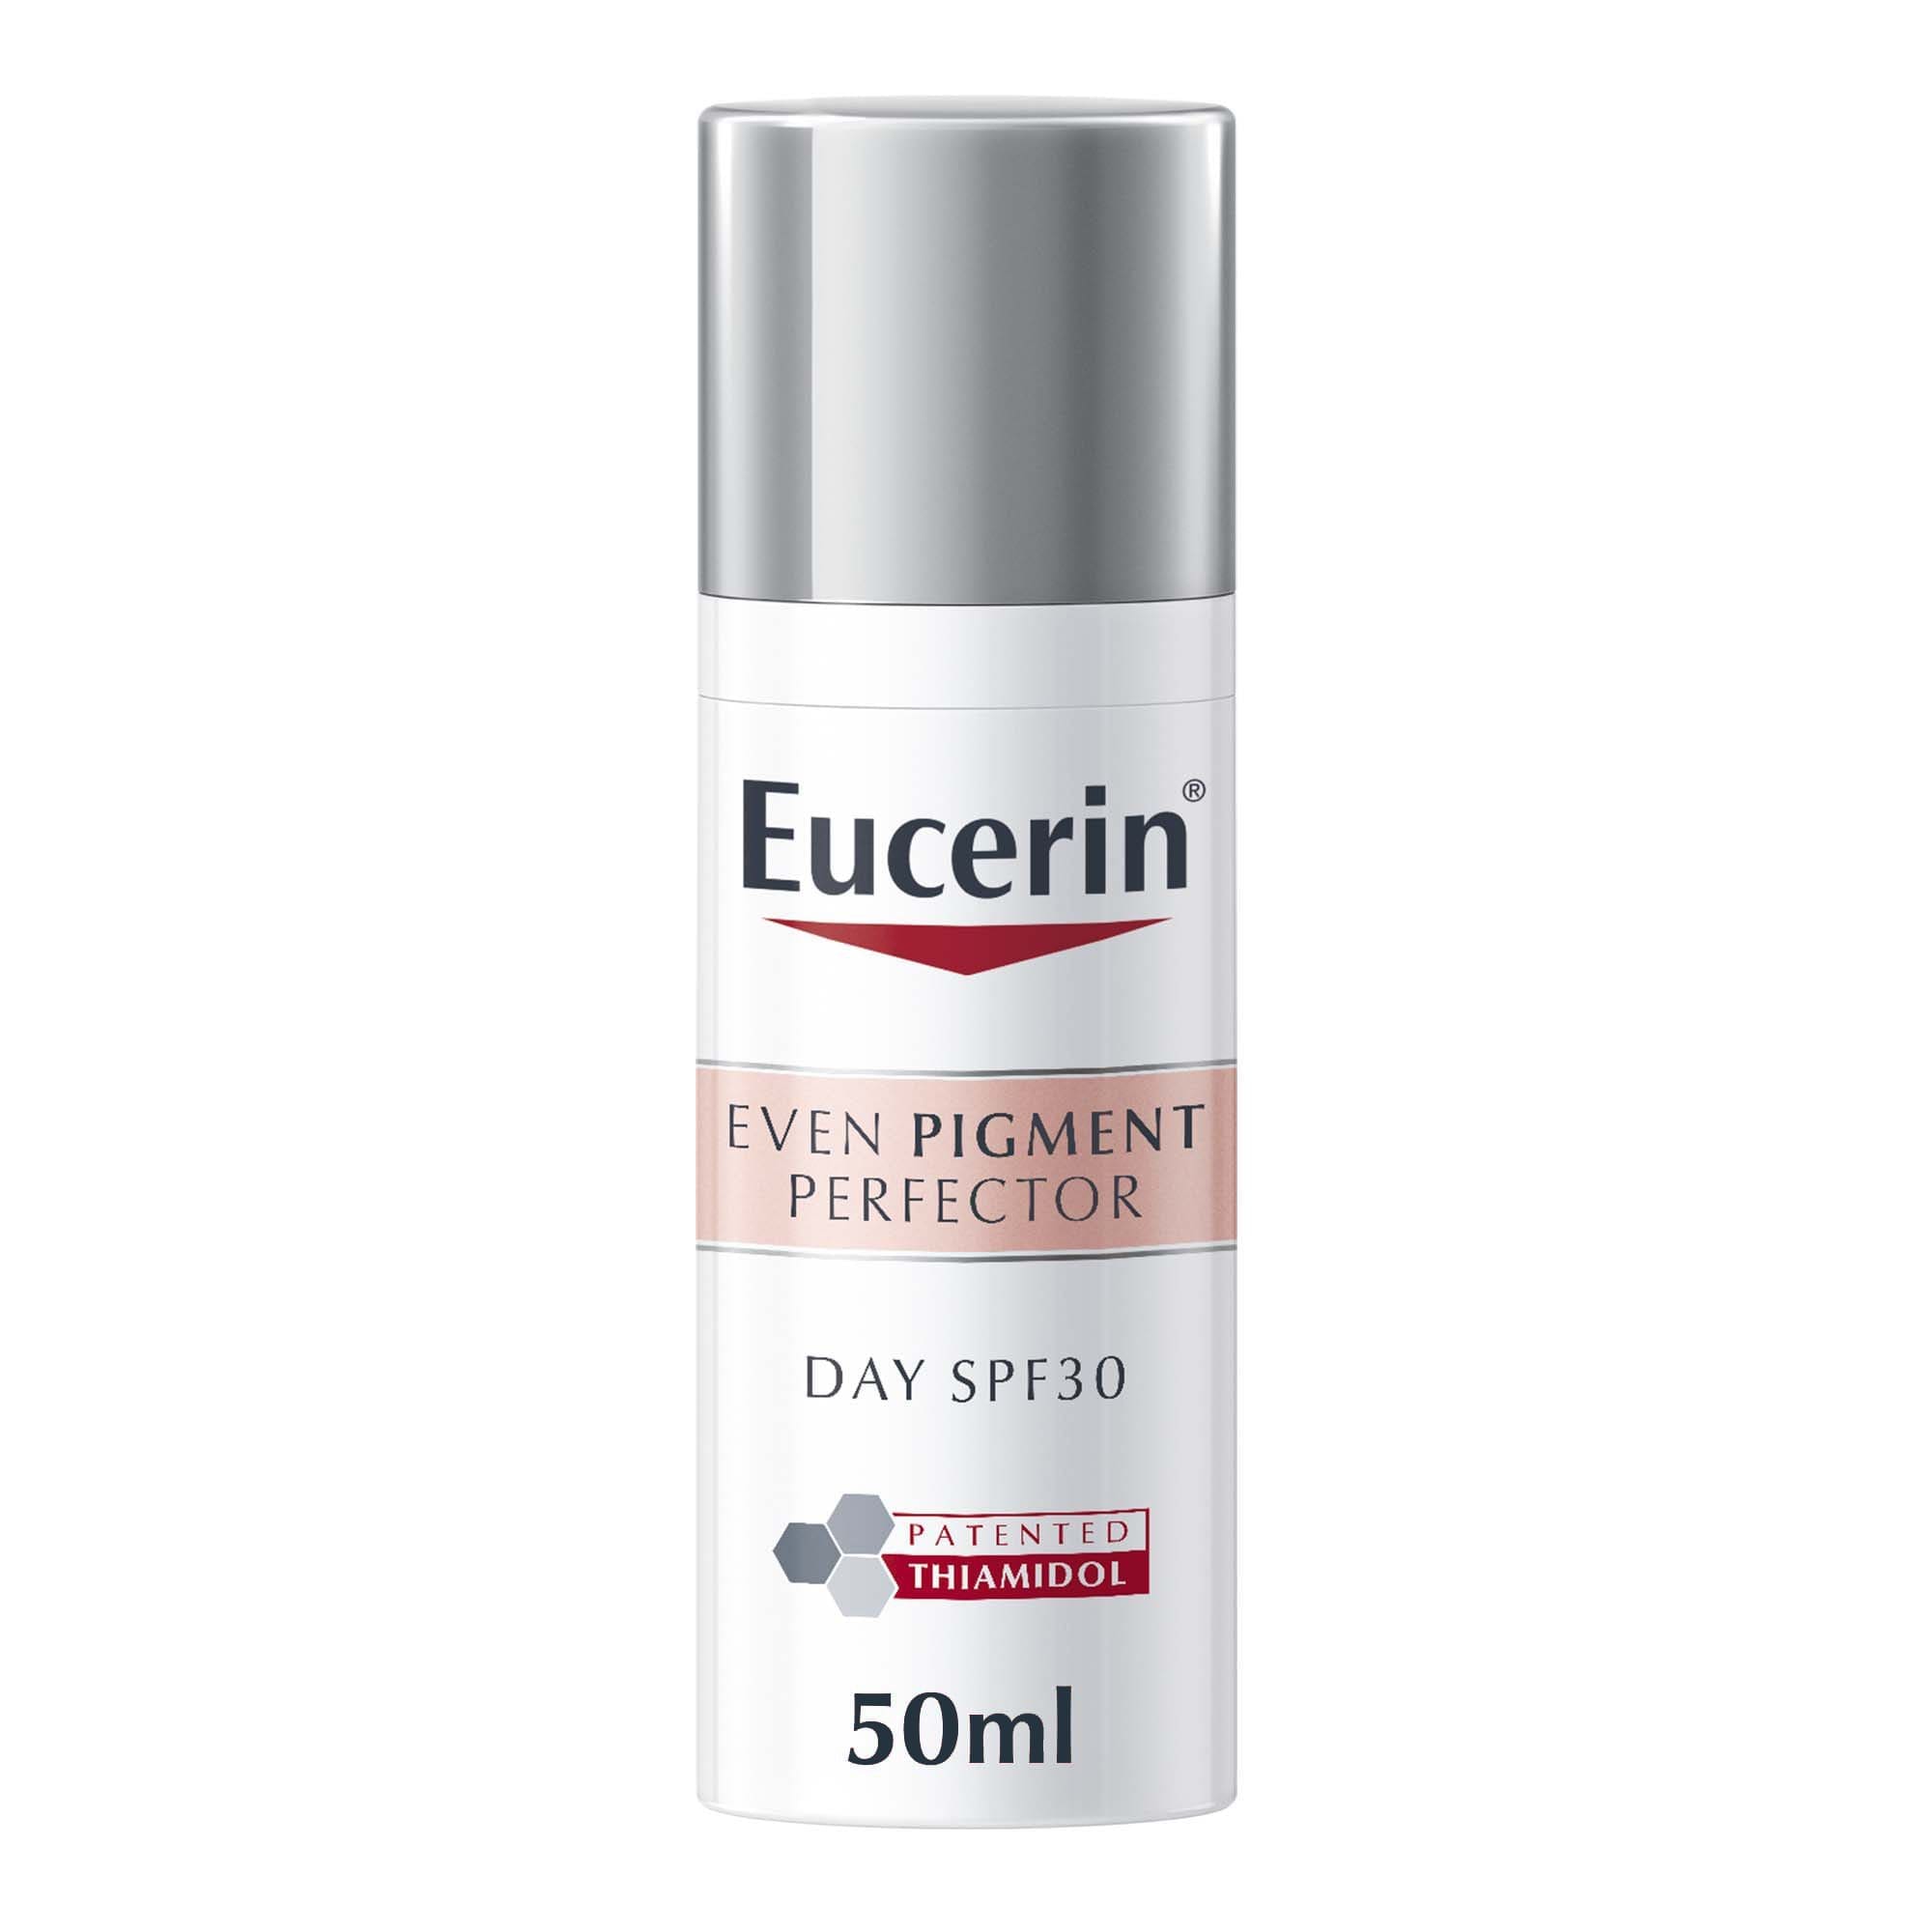 Eucerin Even Pigment Perfector Day Cream, 50ml